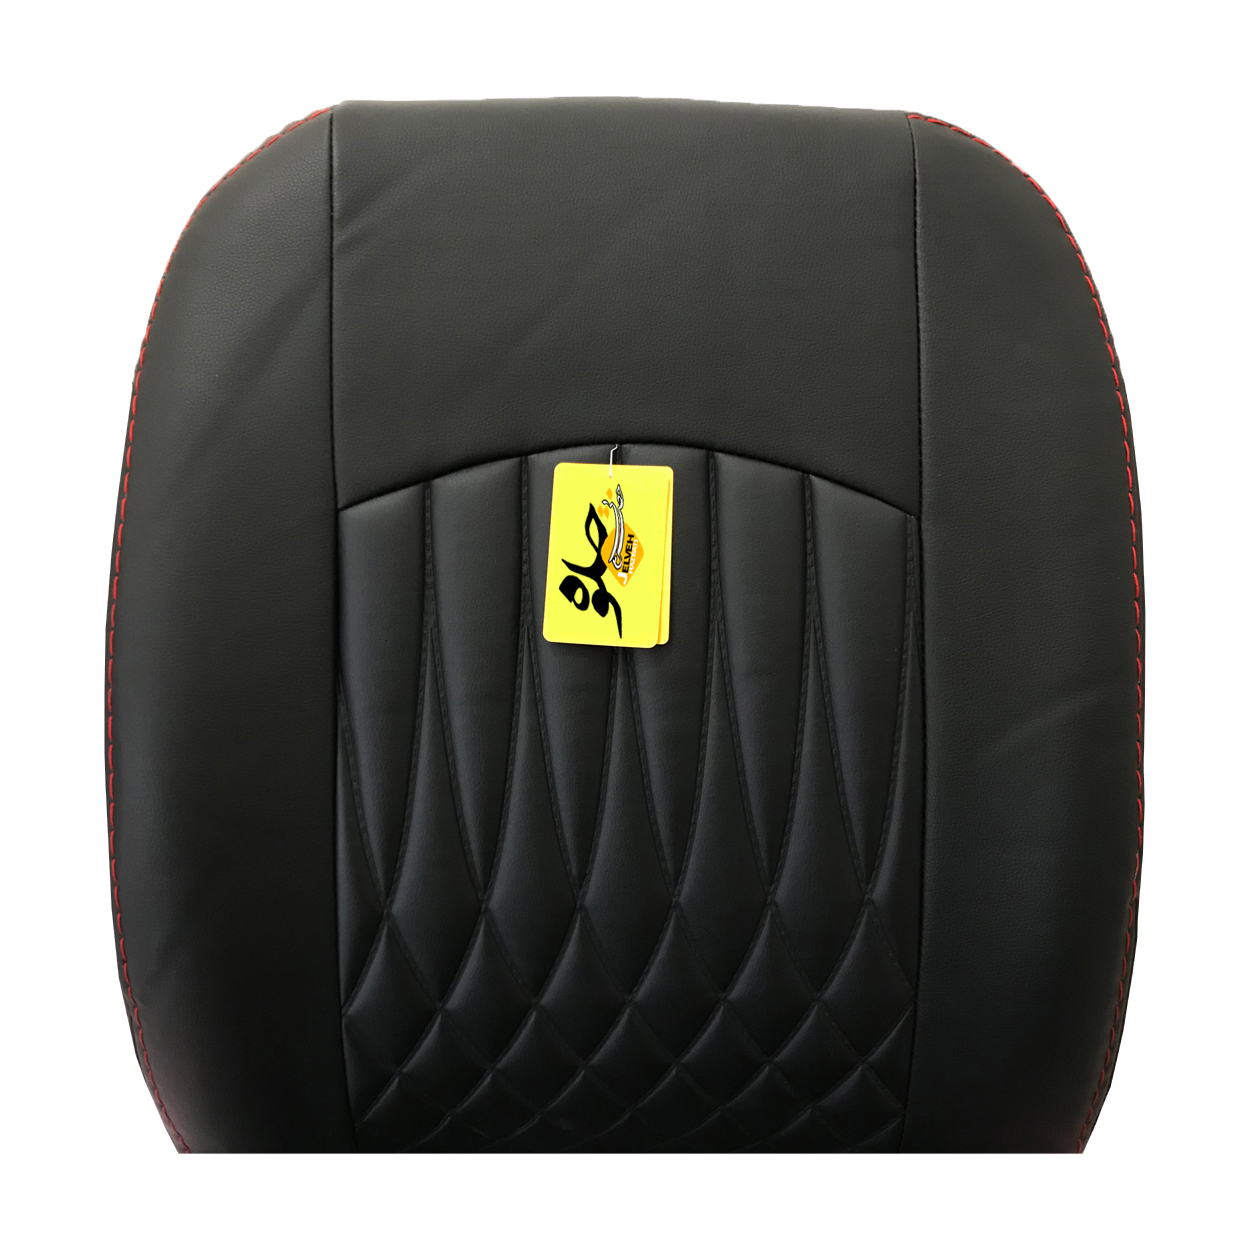 روکش صندلی خودرو جلوه مدل bg12 مناسب برای زانتیا